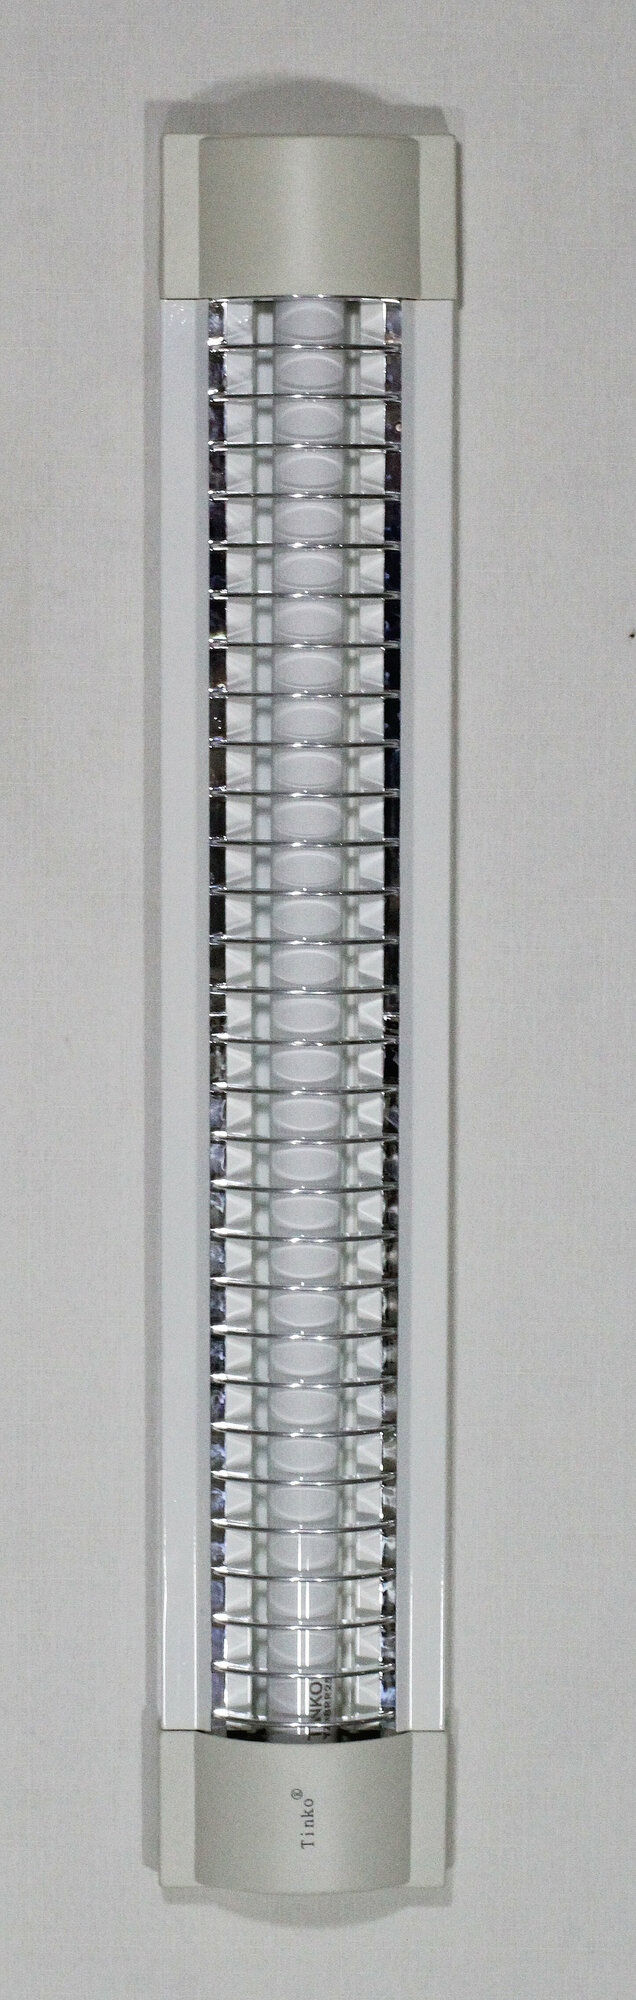 Светильник настенно-потолочный 2003, T8, 18Вт